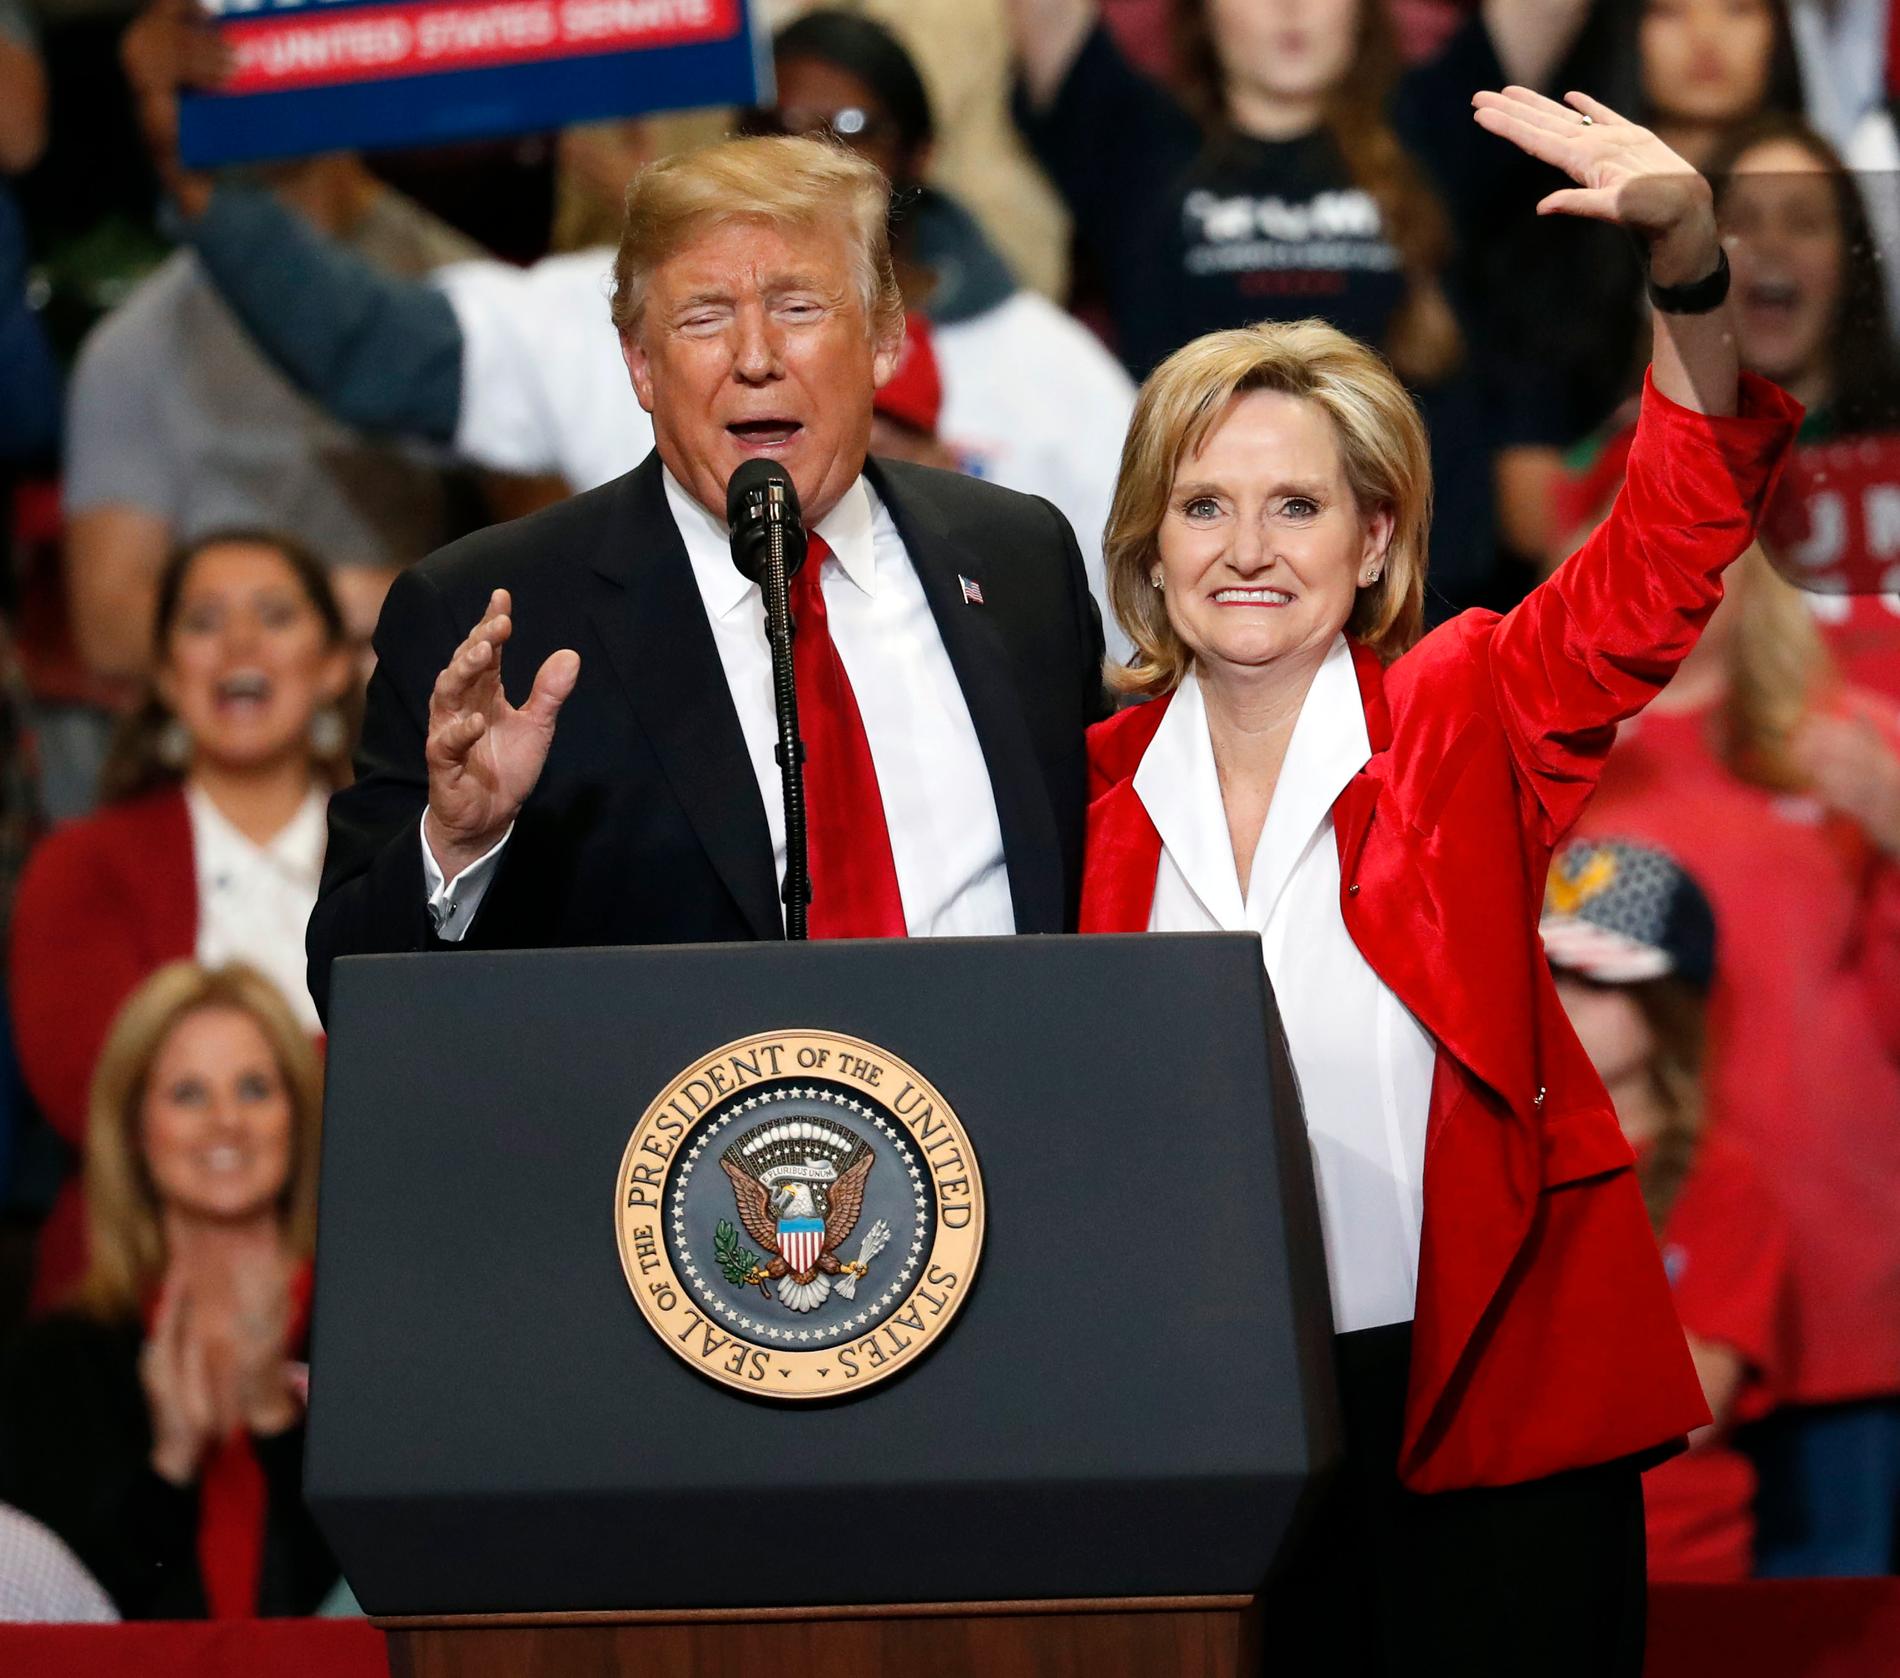 President Donald Trump tillsammans med sin republikanska partikamrat och senatskandidat Cindy Hyde-Smith i Mississippi.